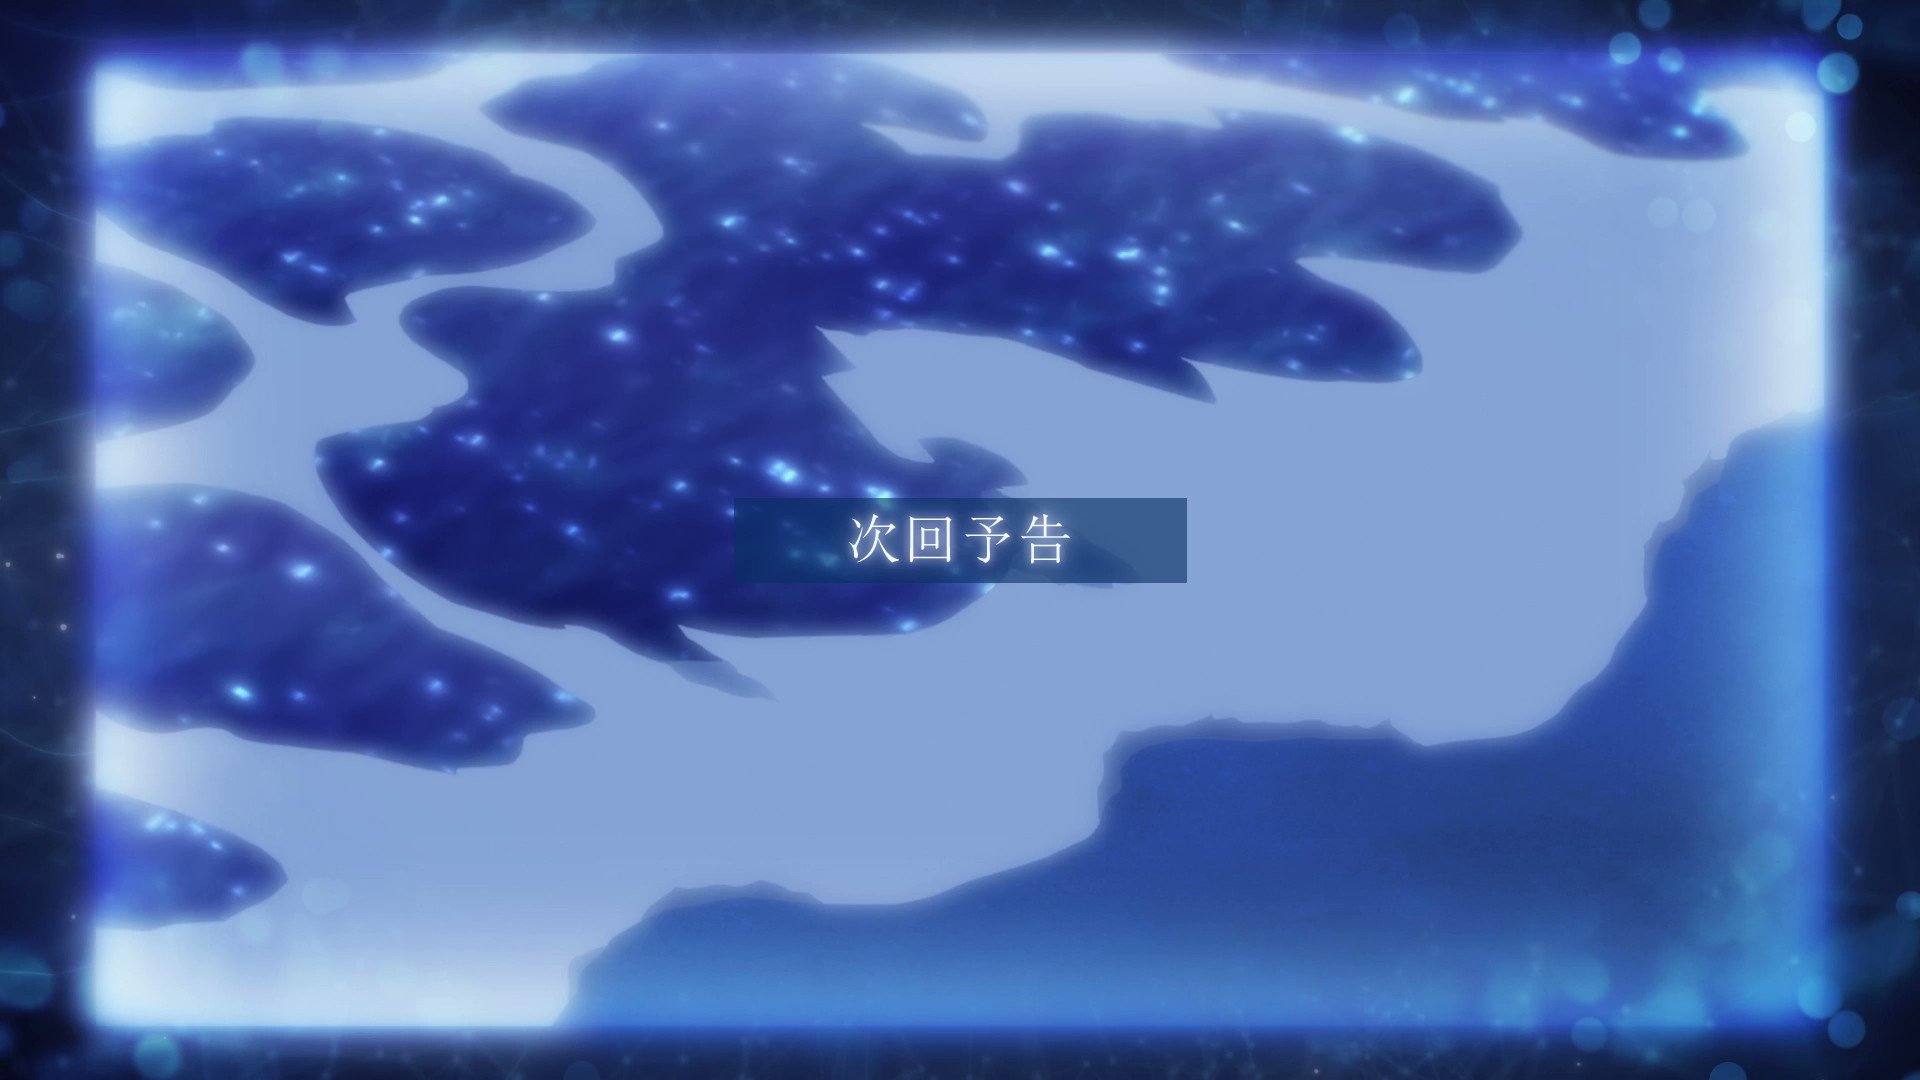 Kudasai on X: Secuencia de ending del anime Kimi wa Houkago Insomnia  (Insomniacs After School), que cuenta con el tema musical Lapse  interpretado por Homecomings. #kimisomu_anime  / X